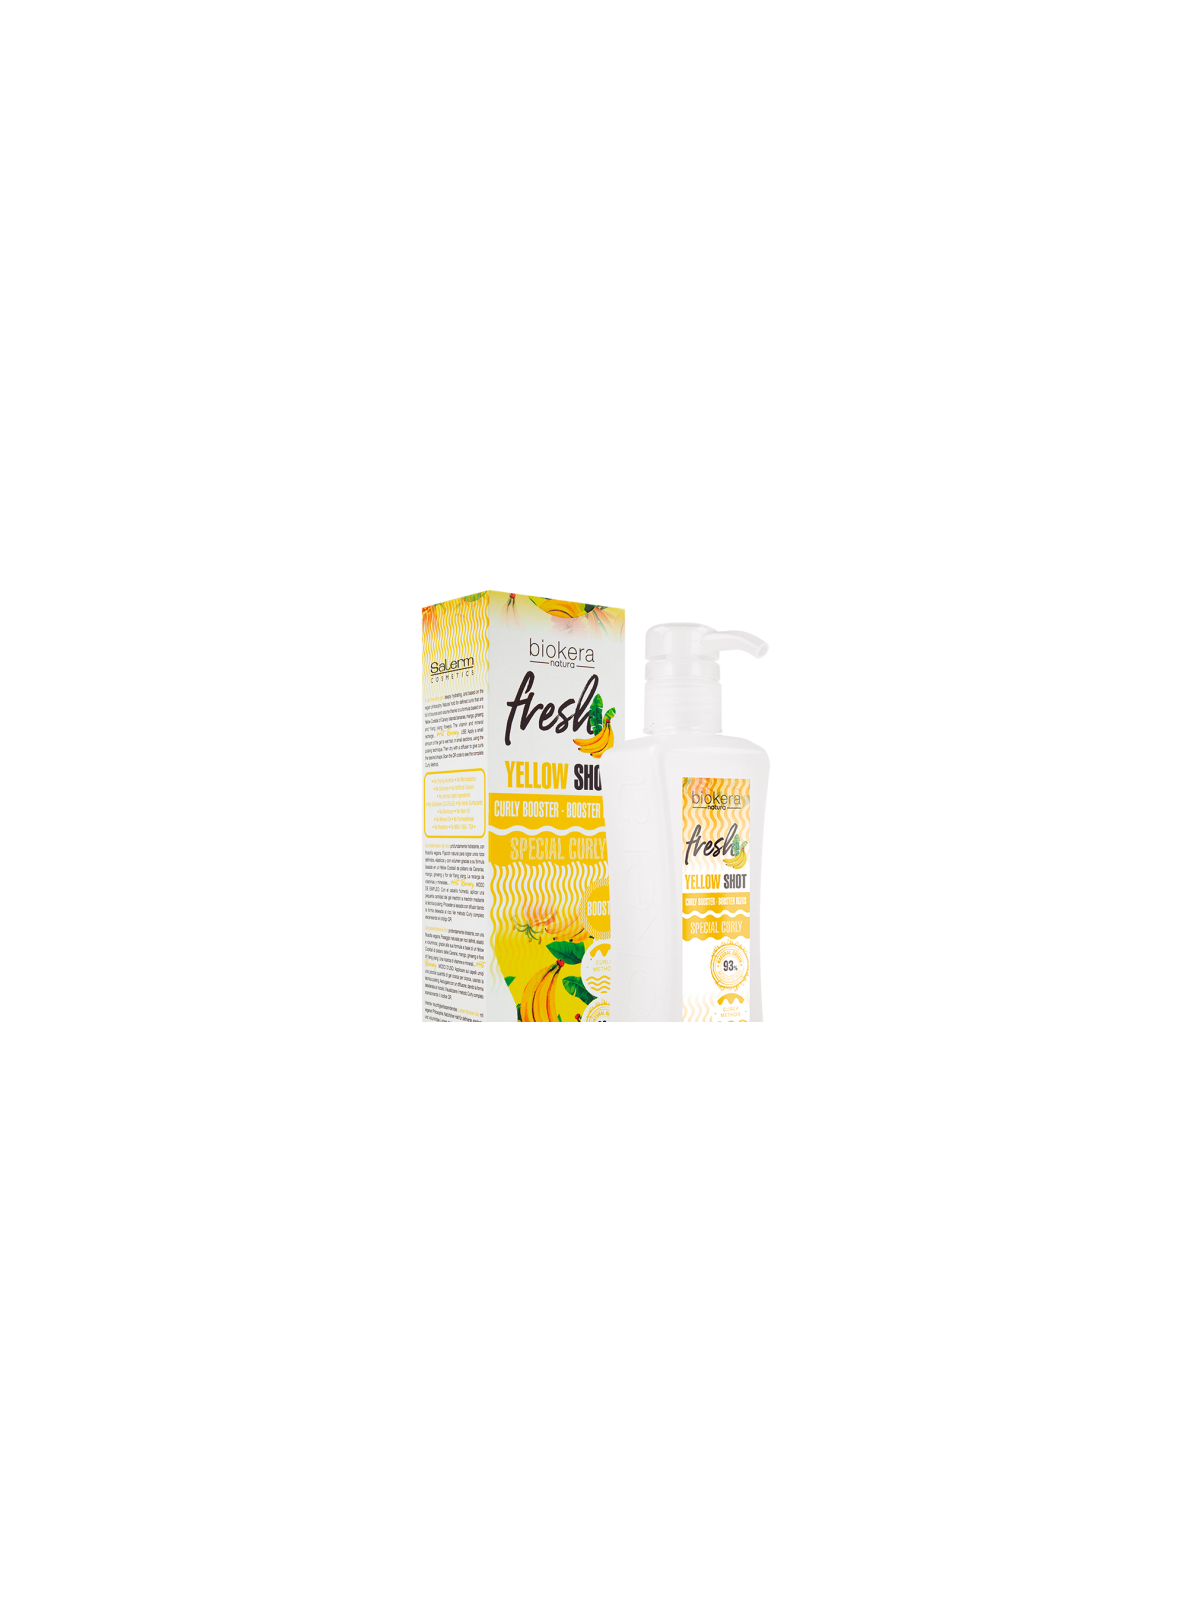 Comprar Biokera Natura Yellow Shot Curly Booster 300 ml Salerm Cosmetics en Inicio por sólo 20,80 € o un precio específico de 18,72 € en Thalie Care